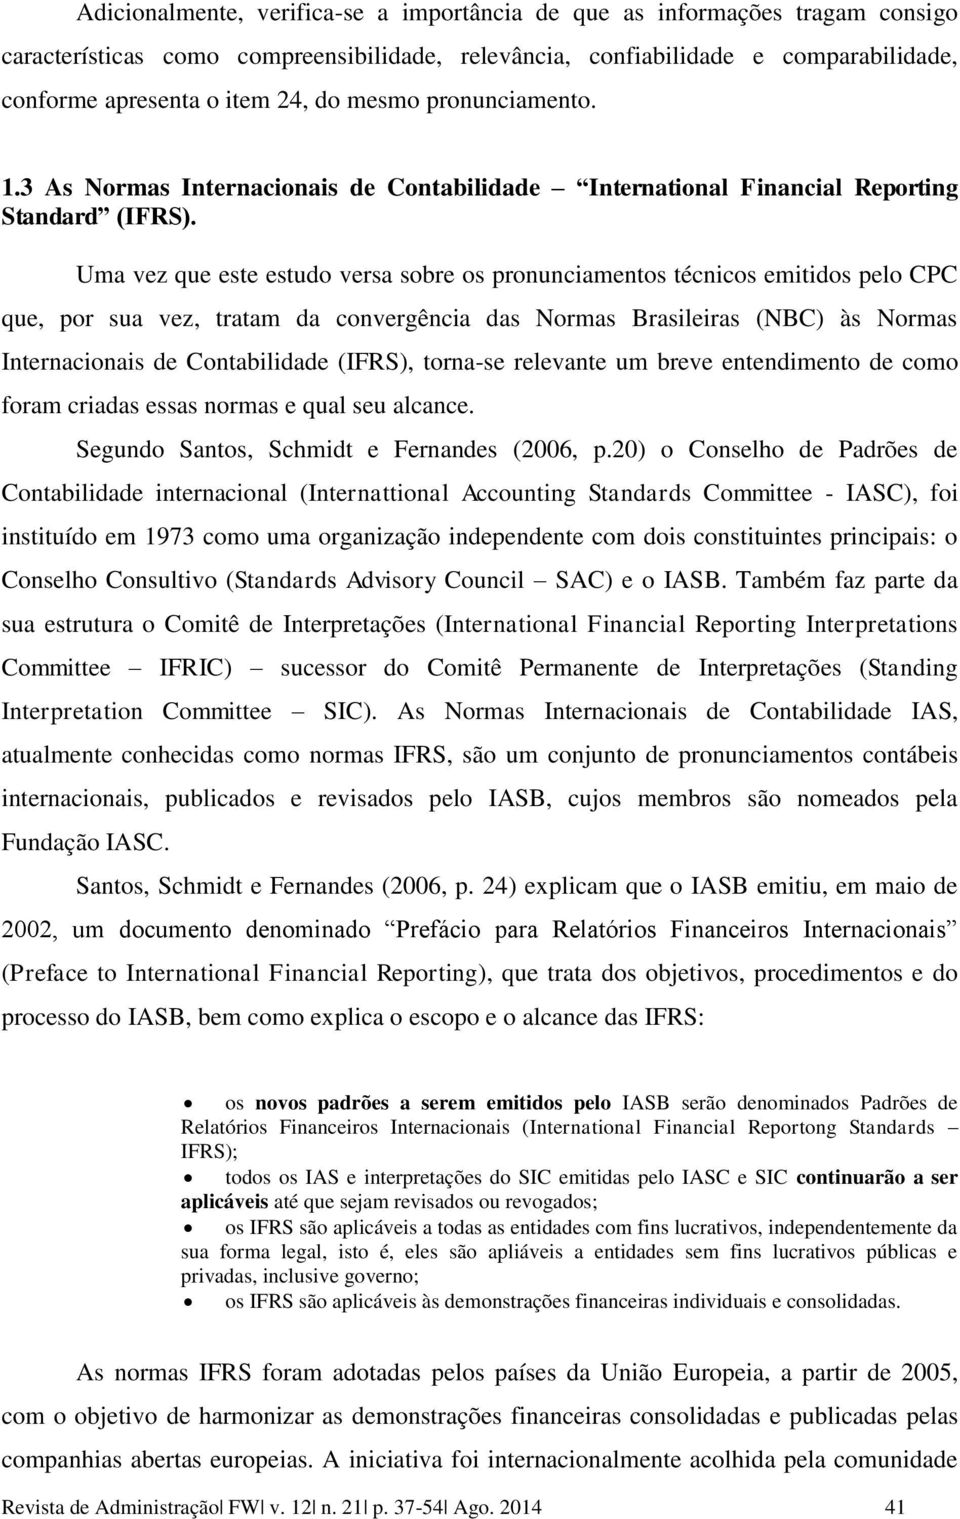 Uma vez que este estudo versa sobre os pronunciamentos técnicos emitidos pelo CPC que, por sua vez, tratam da convergência das Normas Brasileiras (NBC) às Normas Internacionais de Contabilidade